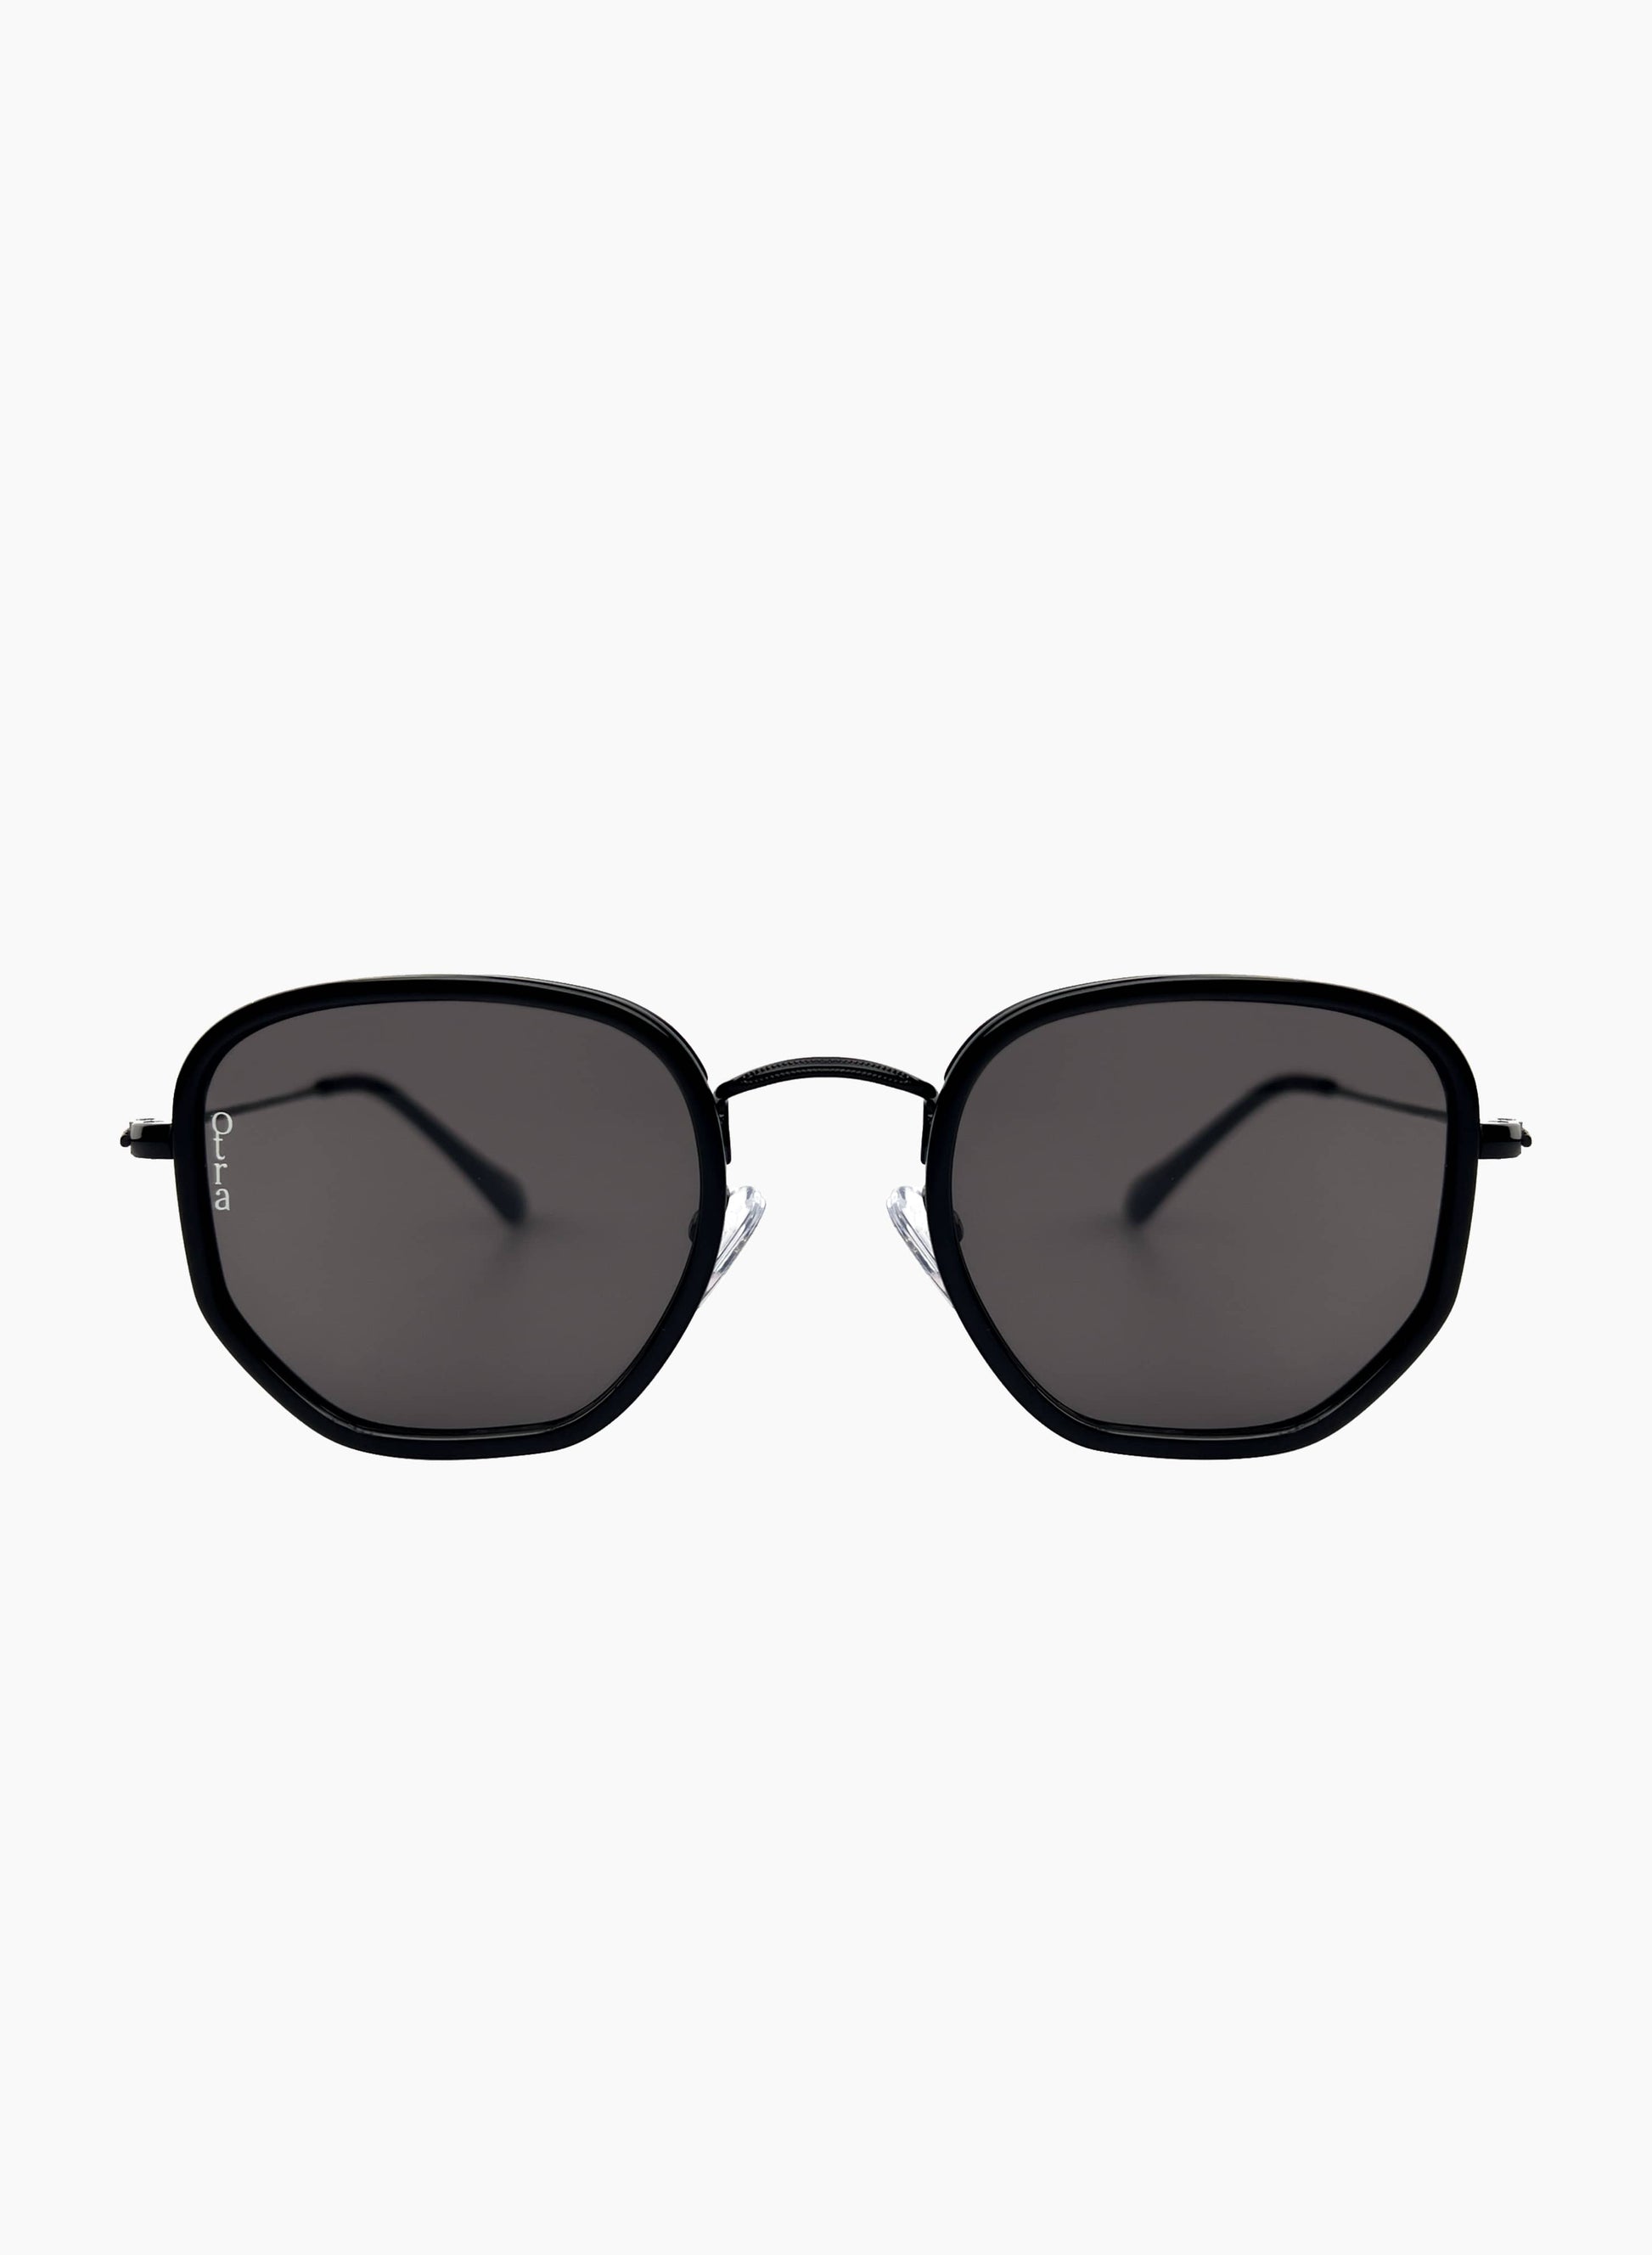 Rectangular Tate glasses in black lenses with black frame